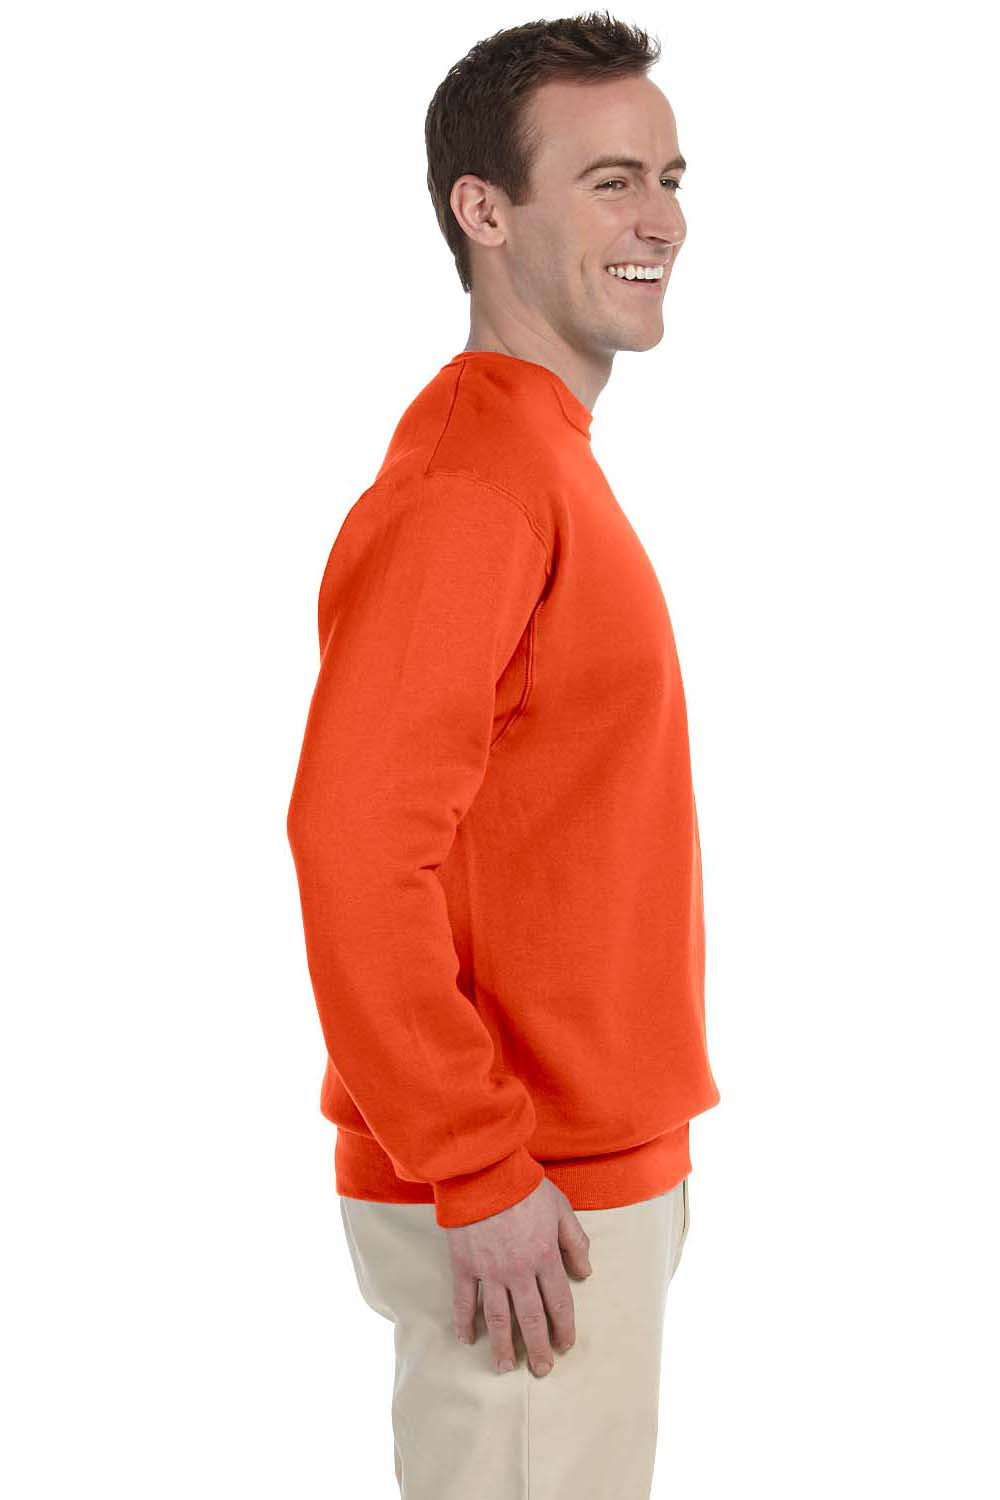 Jerzees 562 Mens NuBlend Fleece Crewneck Sweatshirt Burnt Orange Side